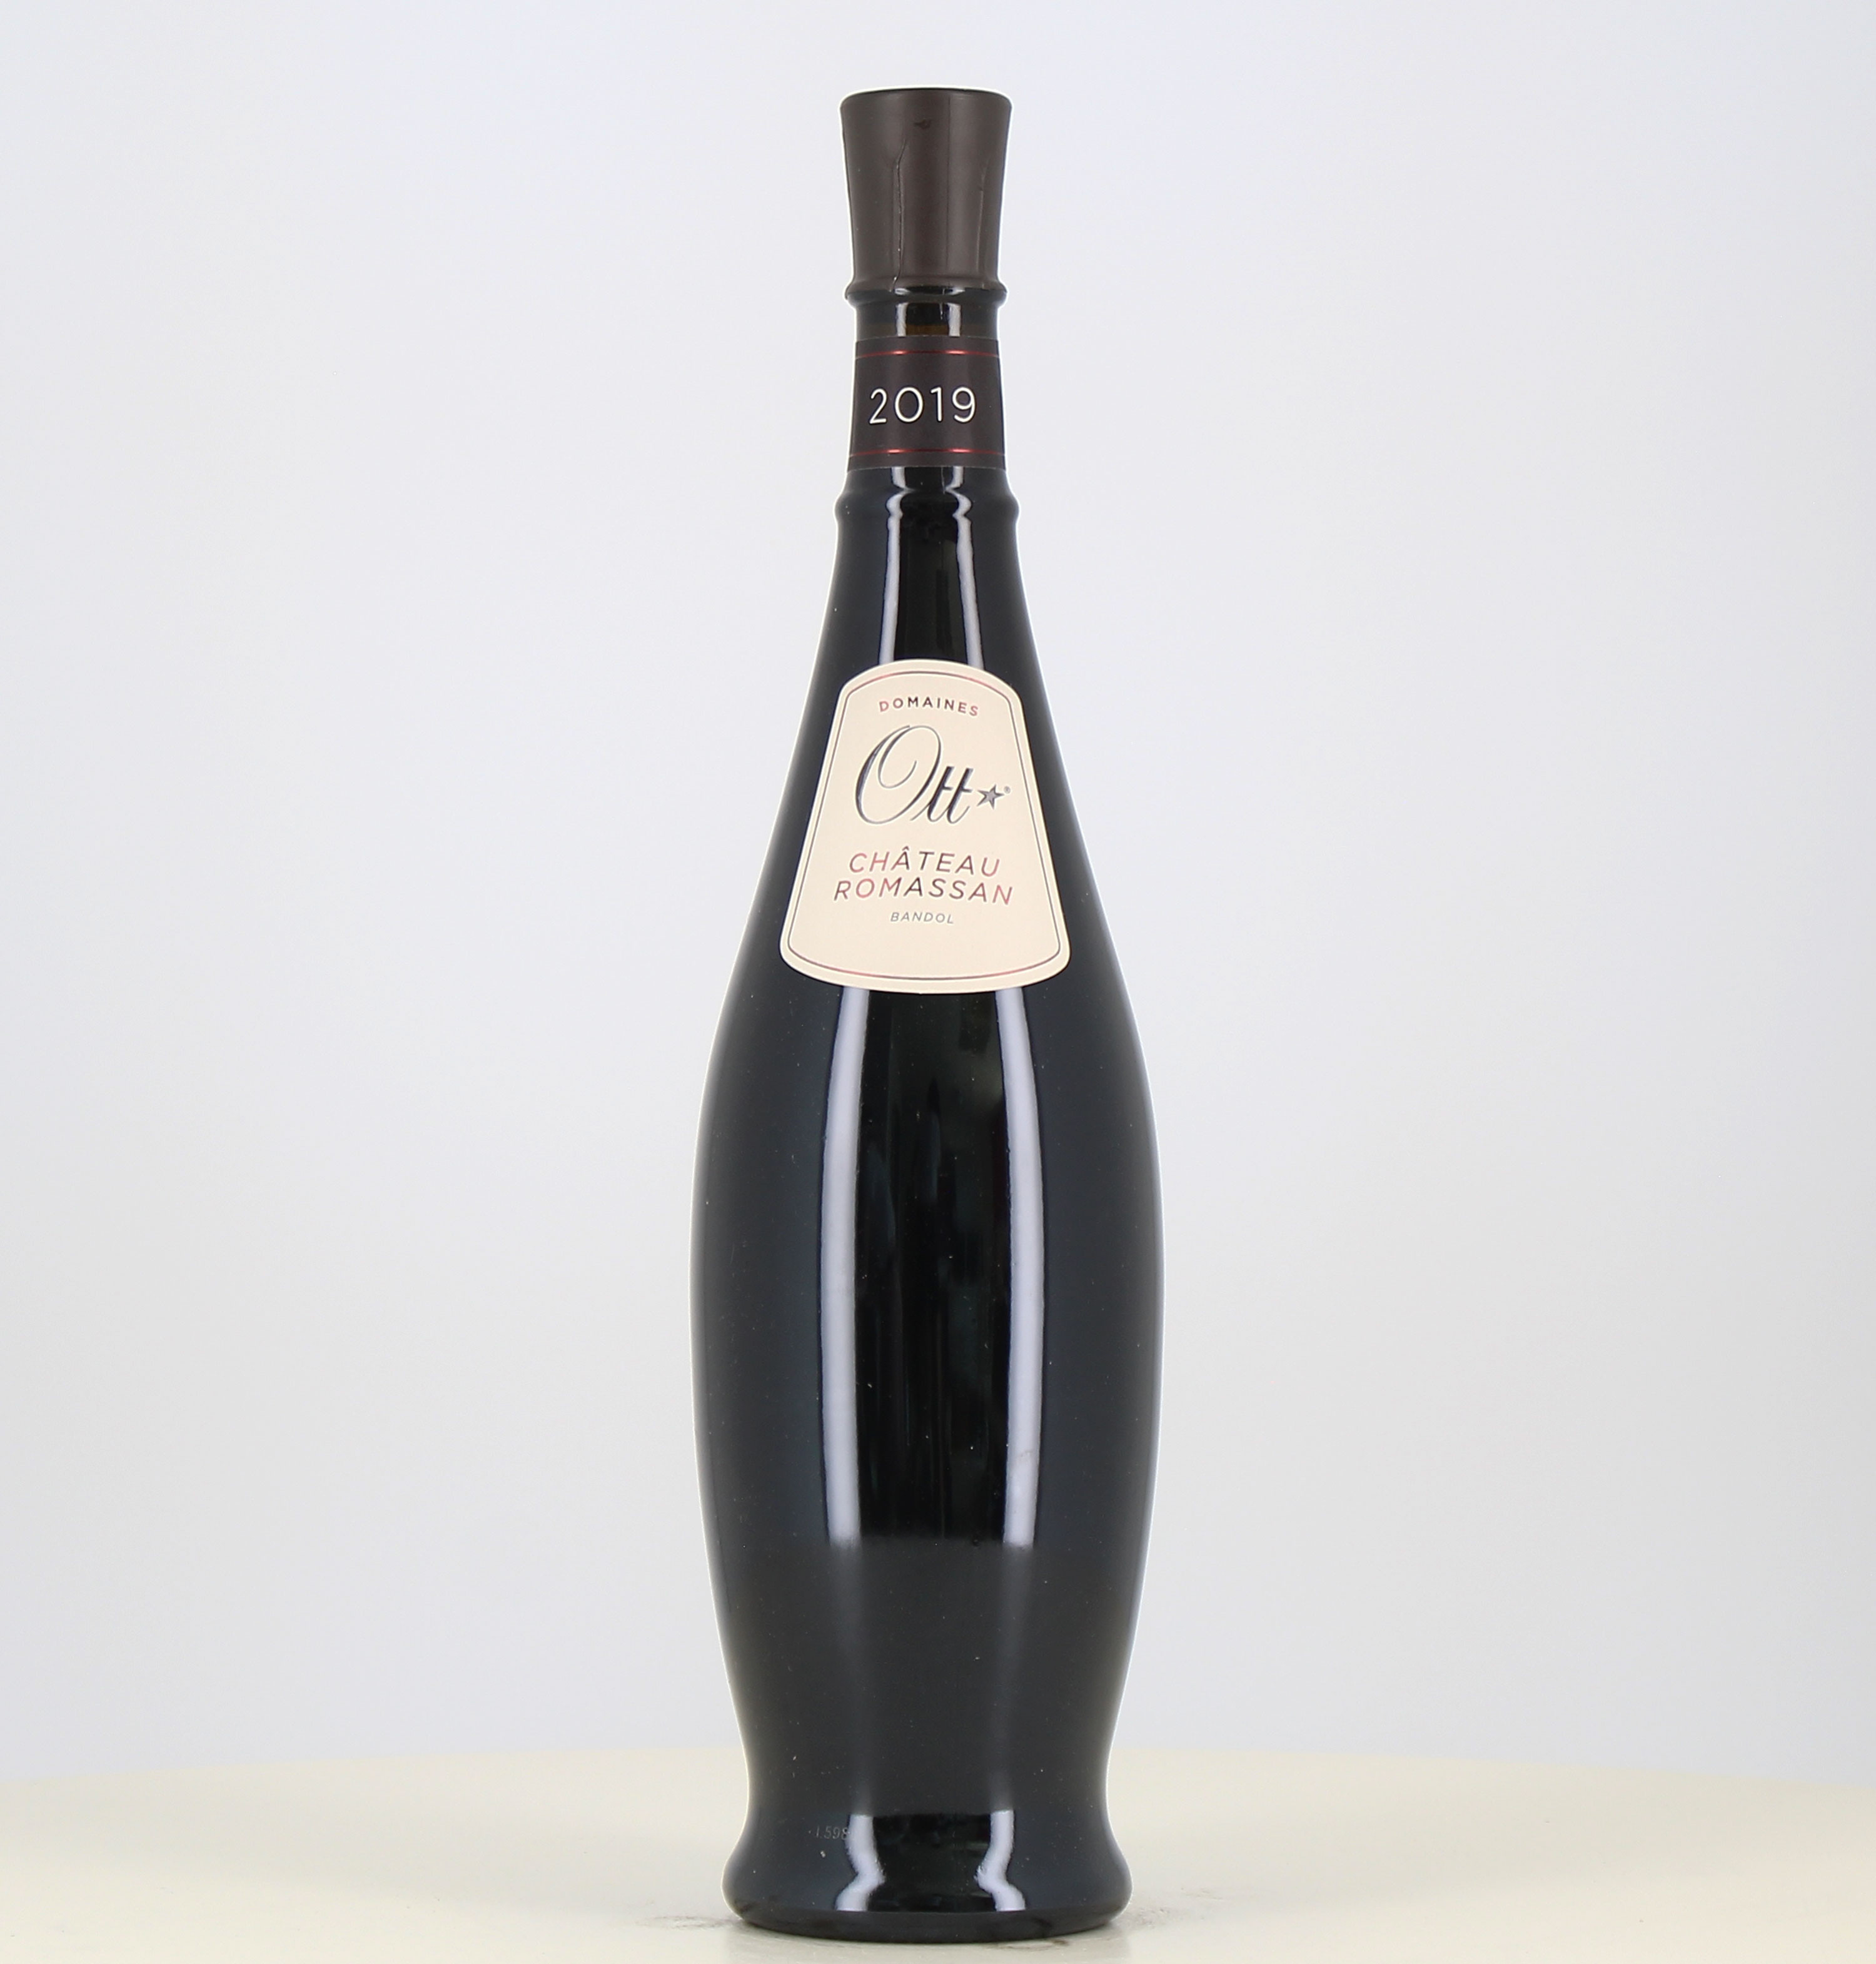 Magnum di vino rosso Ott Bandol rosso Château Romassan 2019 